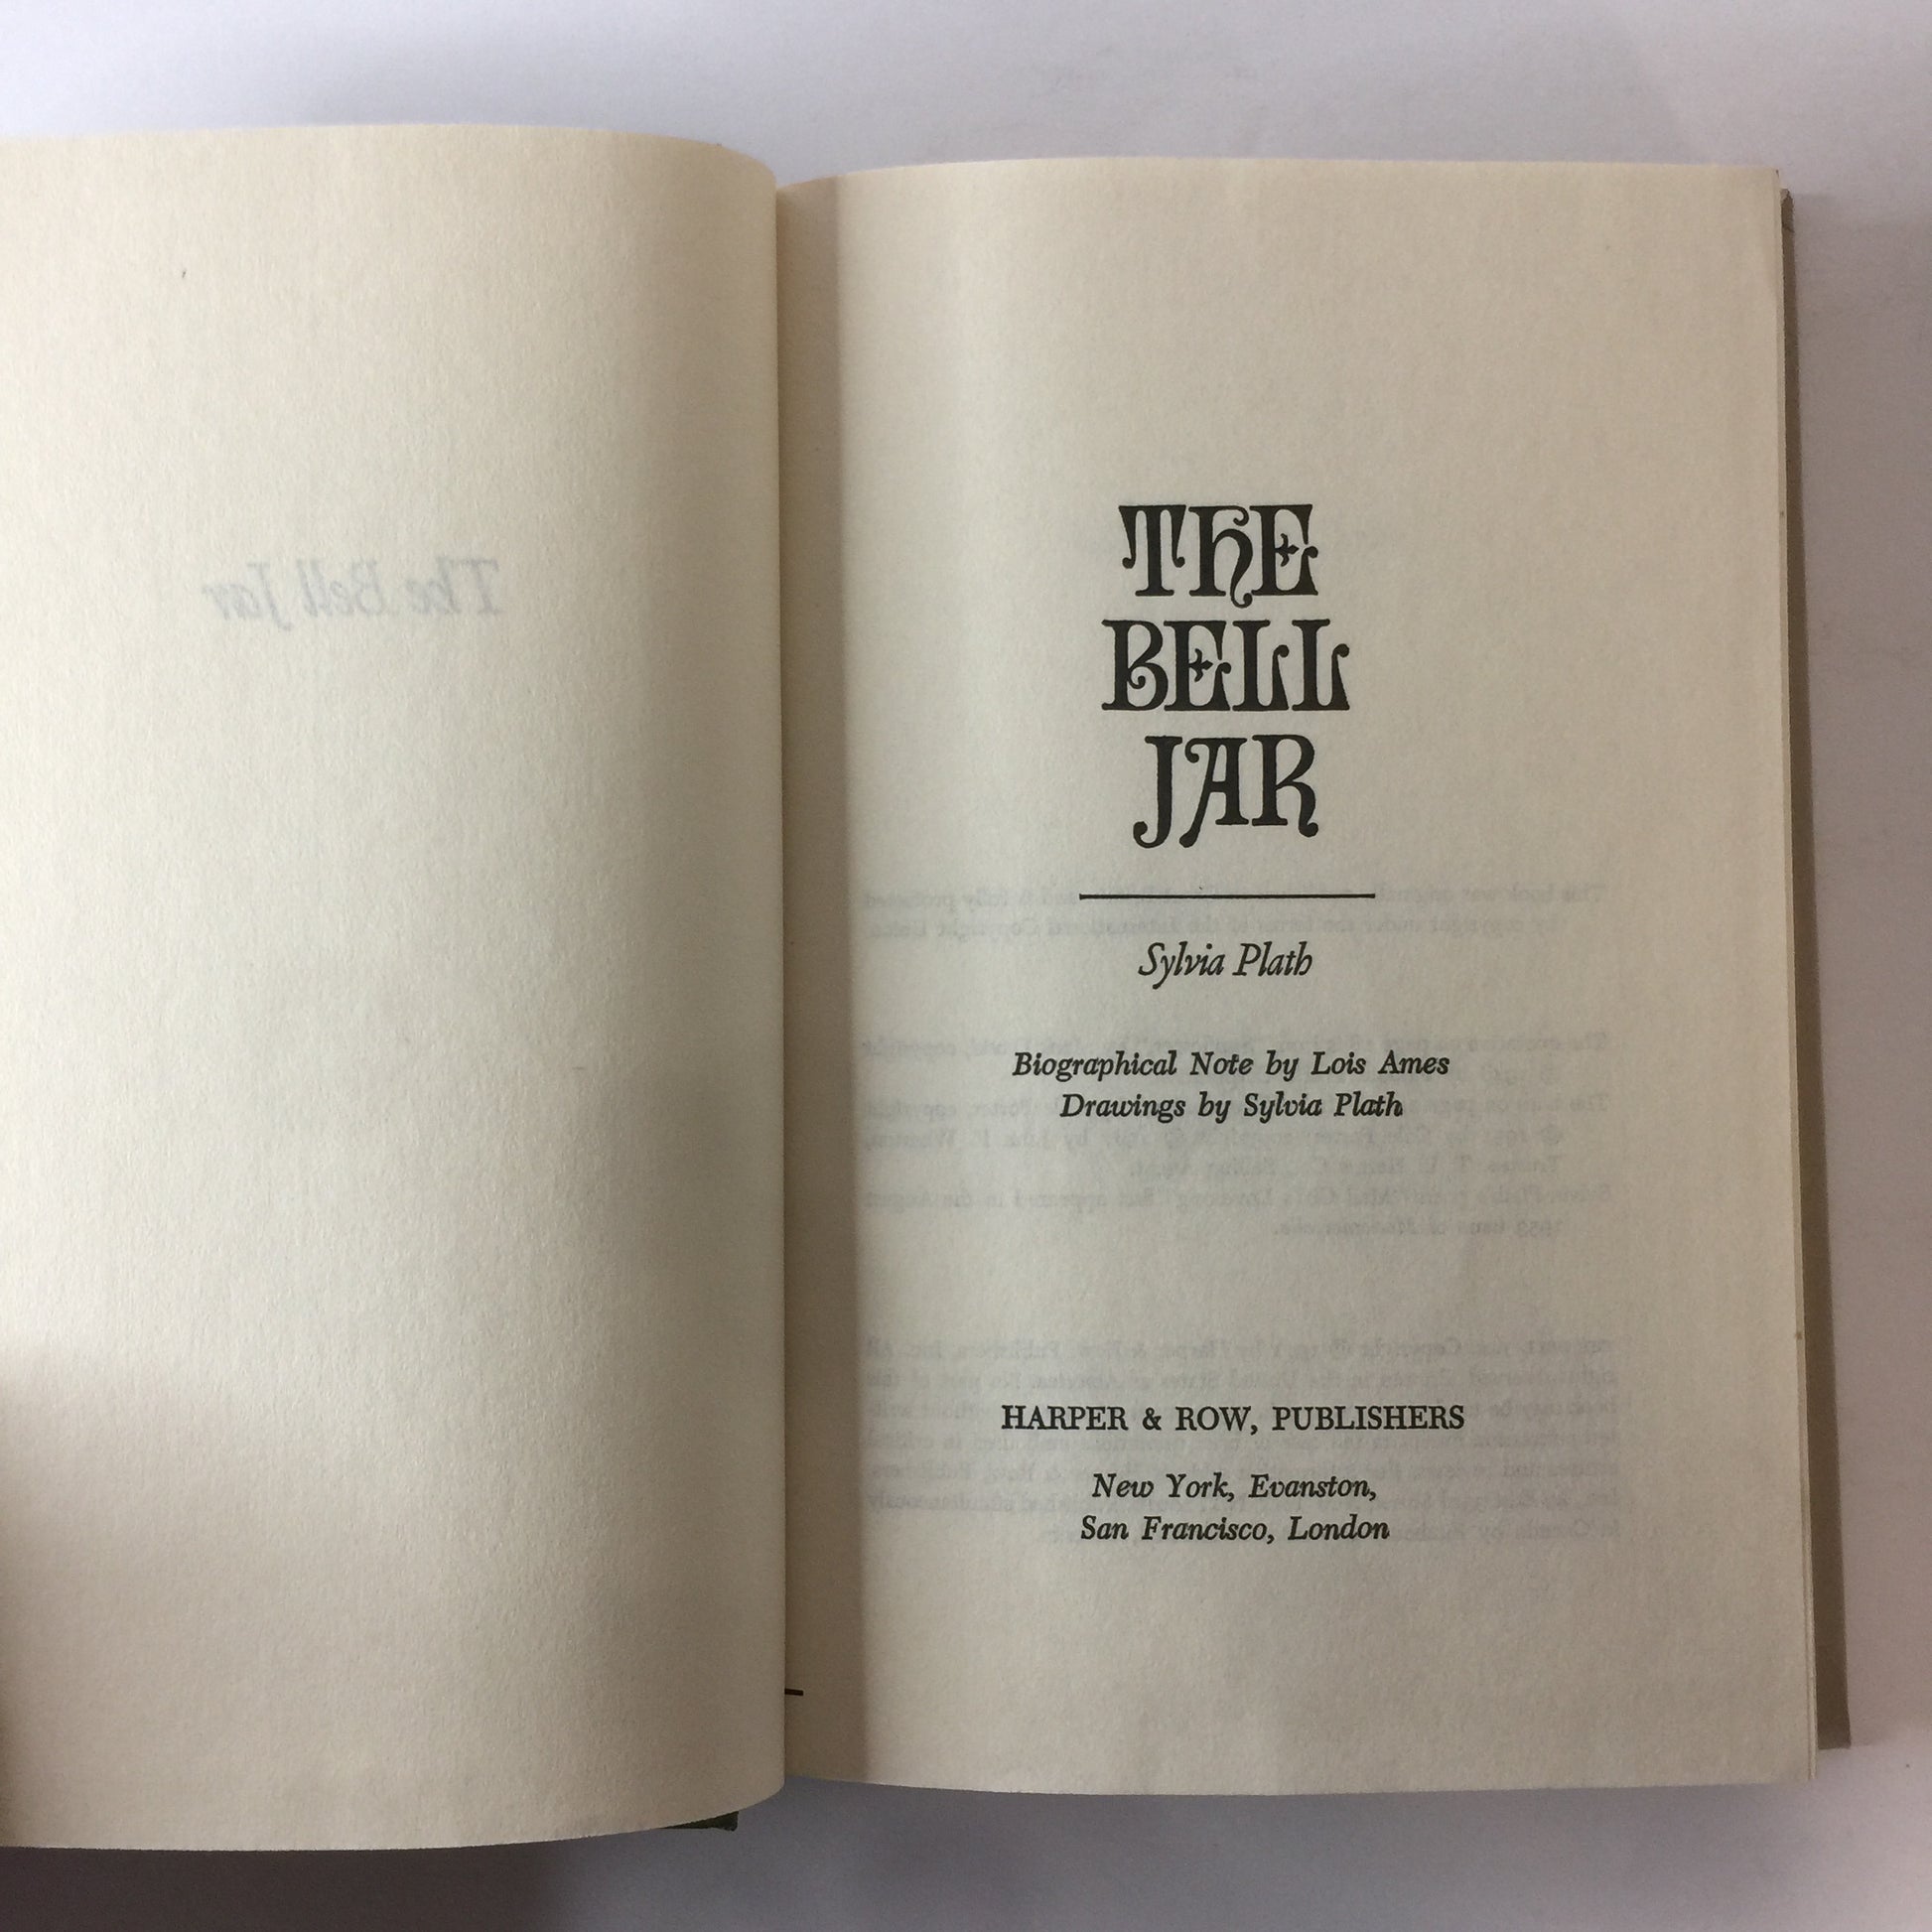 The Bell Jar – Open Textbook